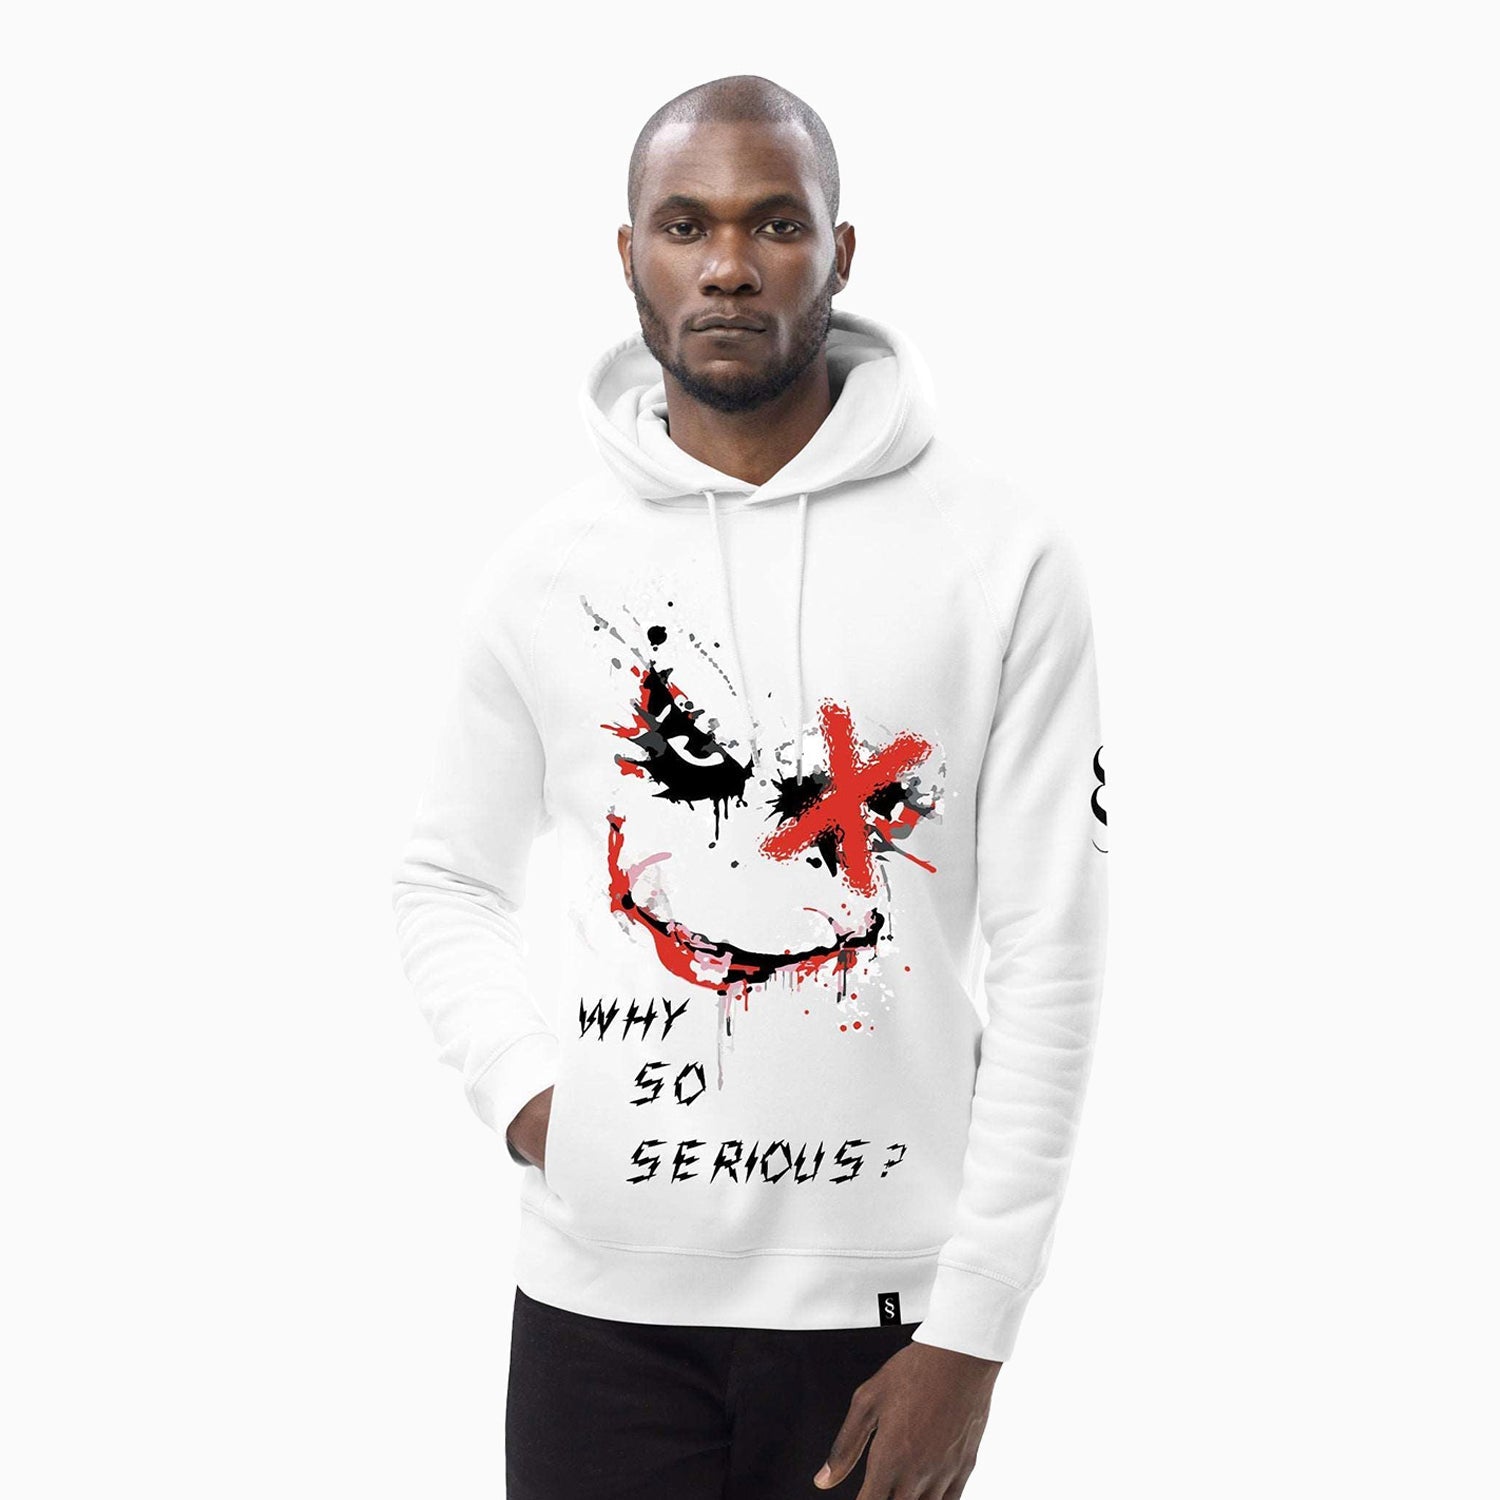 joker-design-printed-pull-over-white-hoodie-for-men-sh106-100